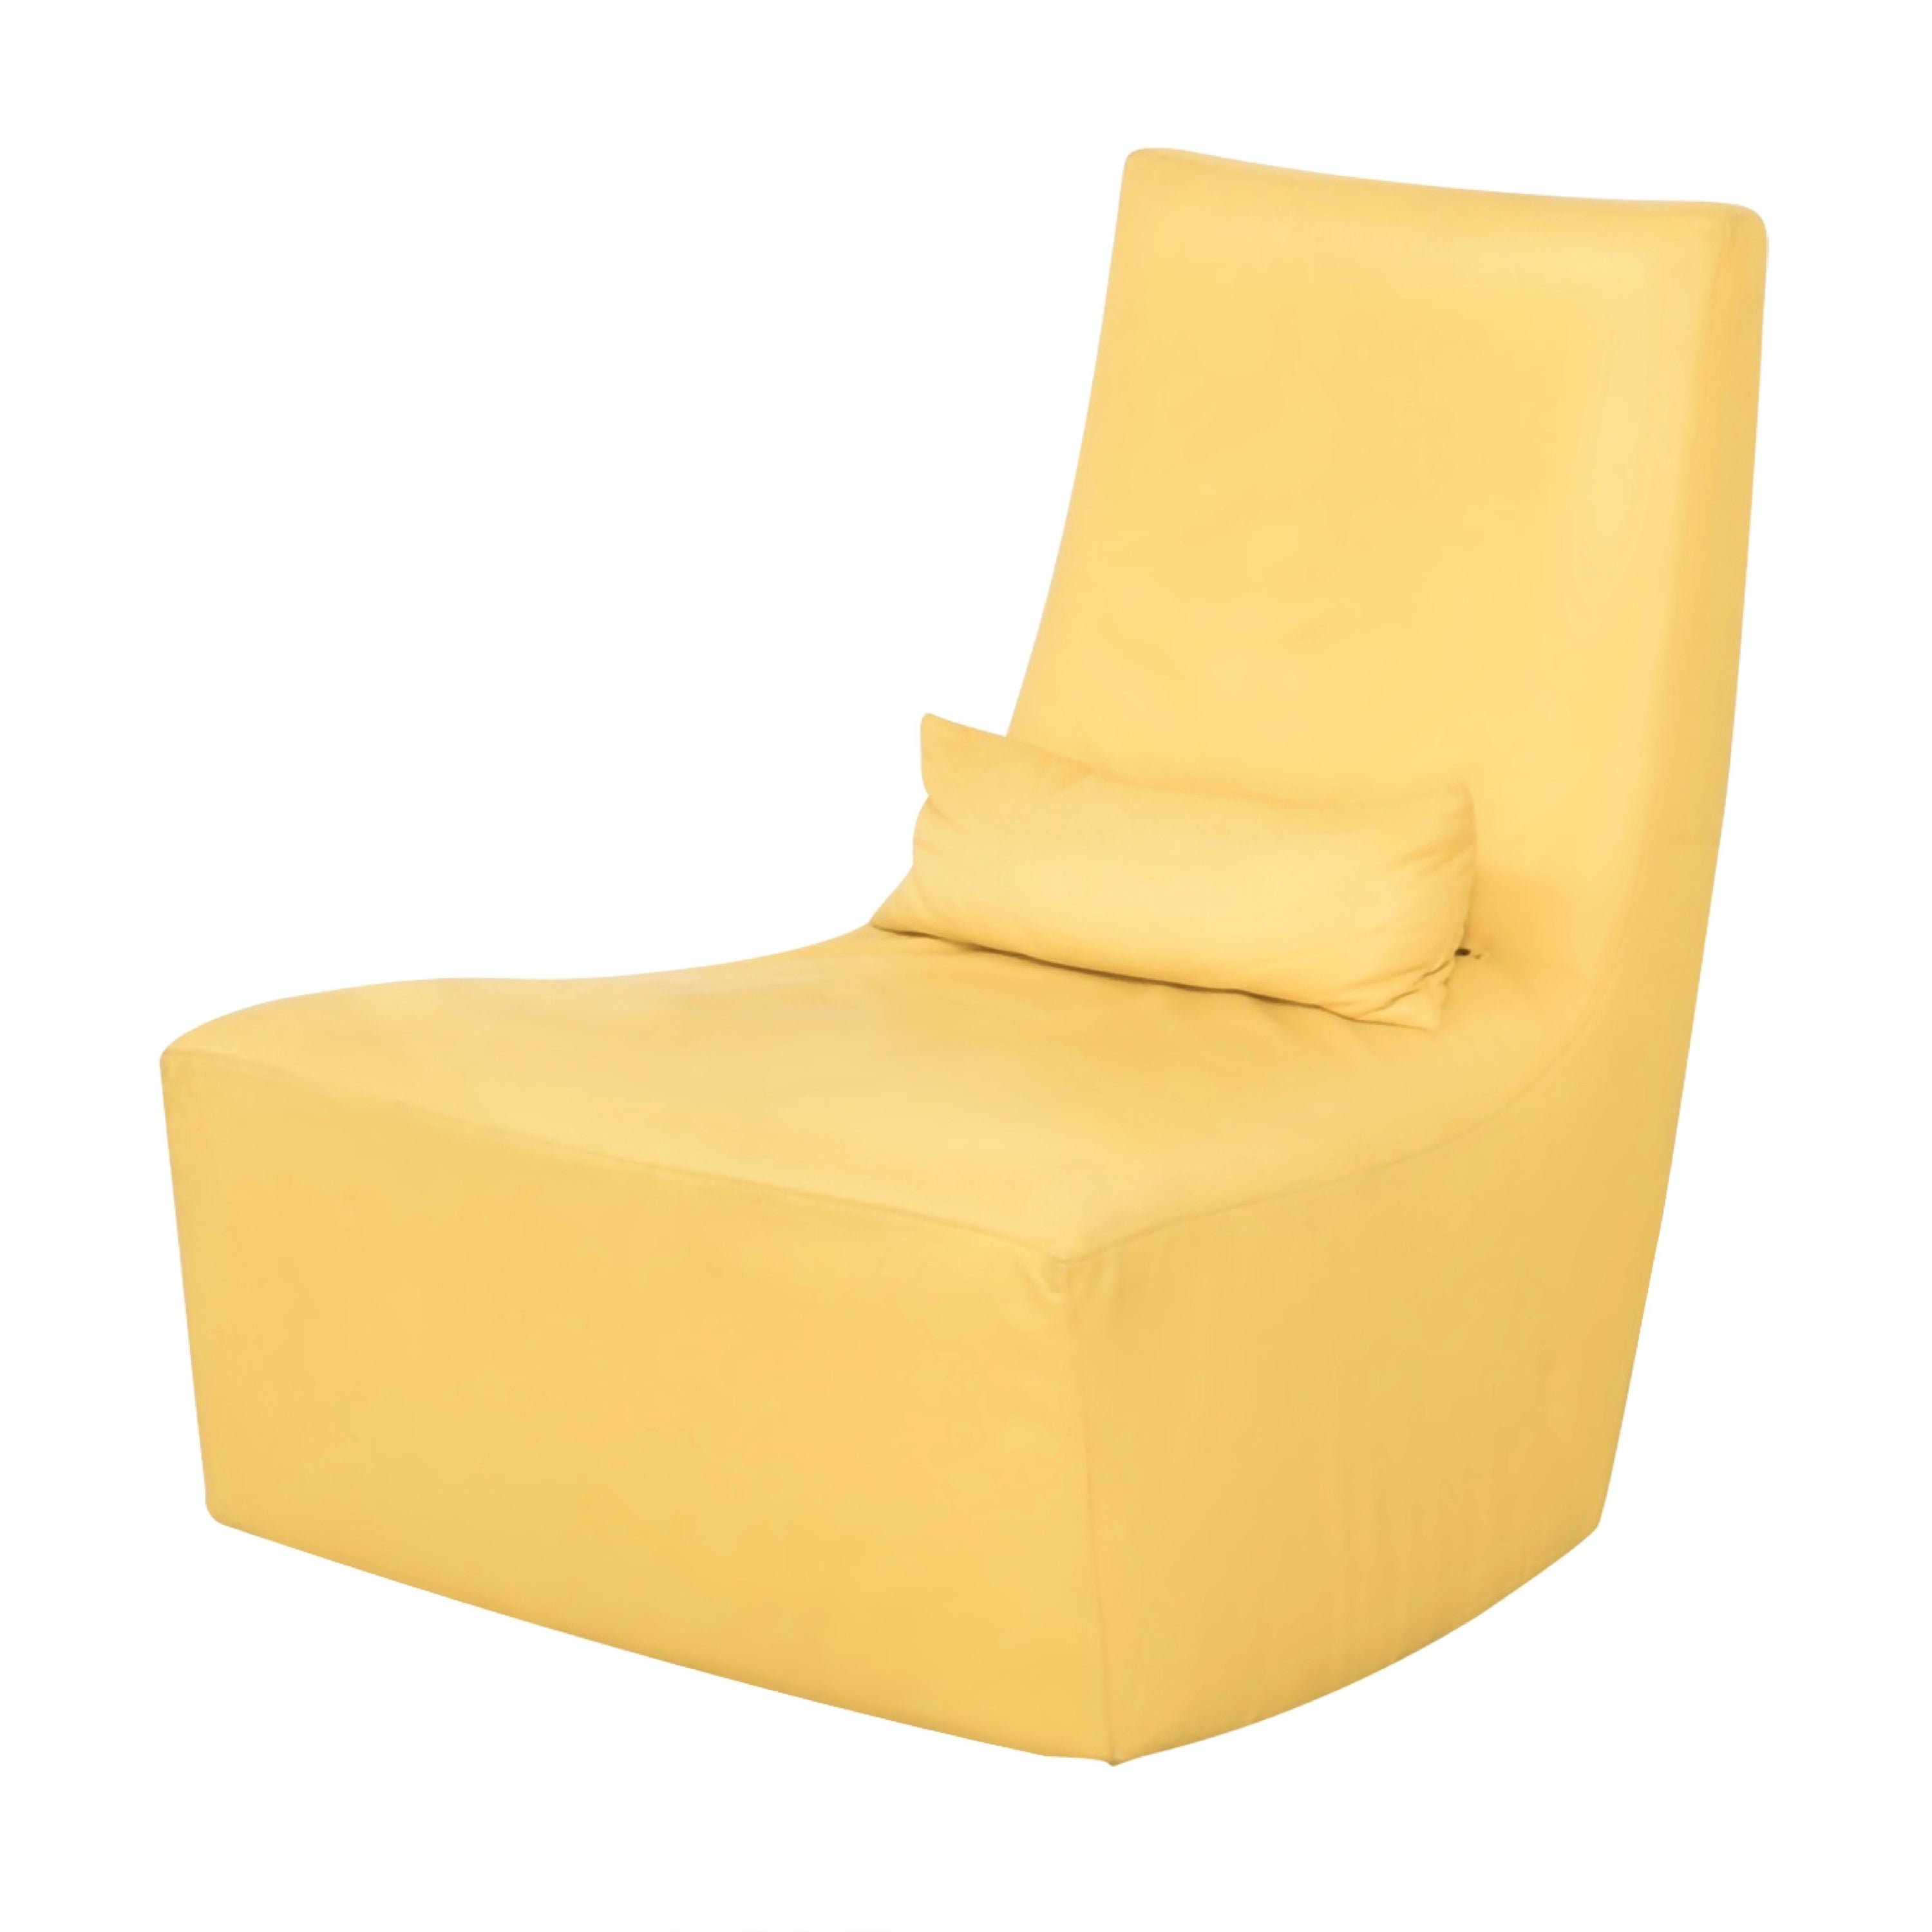 Lumbar at roset neo ligne Ligne Pillow, | Roset roset Yellow, Rocker rocking France Chair Lounge Leather chair, chair Cream rocking 1stDibs ligne with